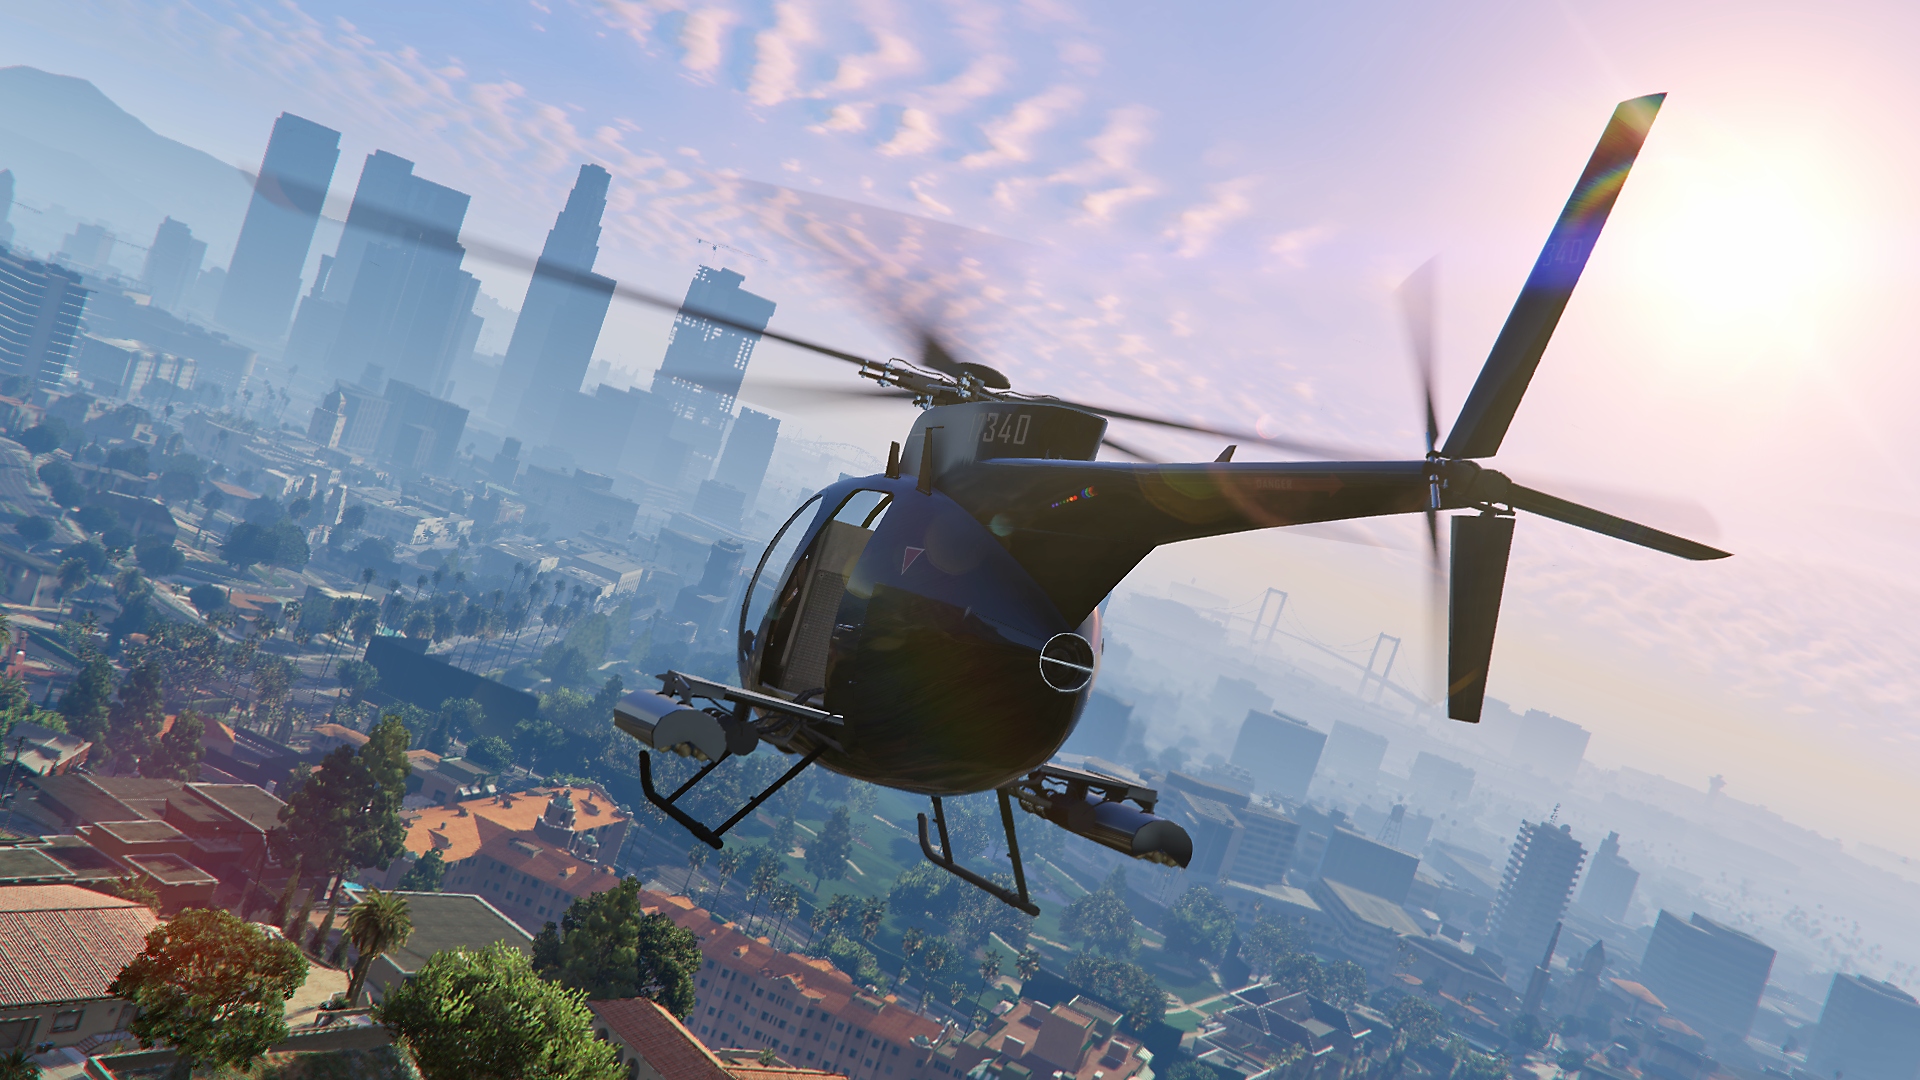 Grand Theft Auto V - Capture d'écran d'un hélicoptère en vol avec la ville en arrière-plan